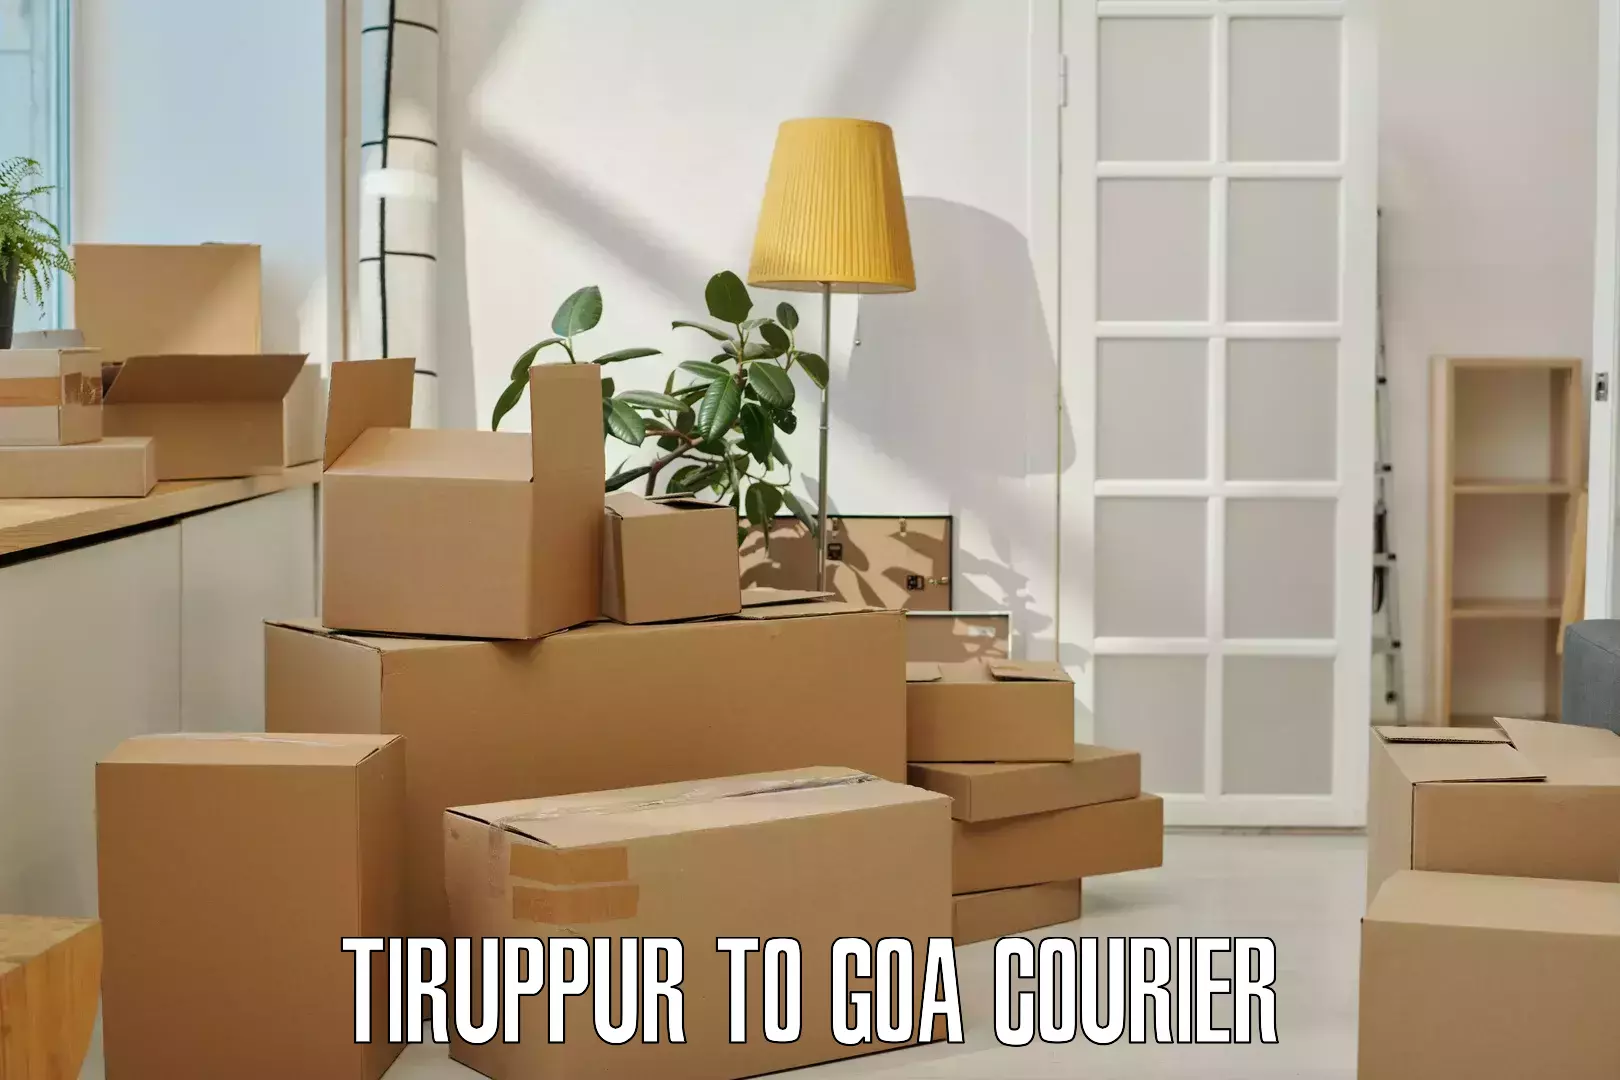 Efficient logistics management in Tiruppur to Goa